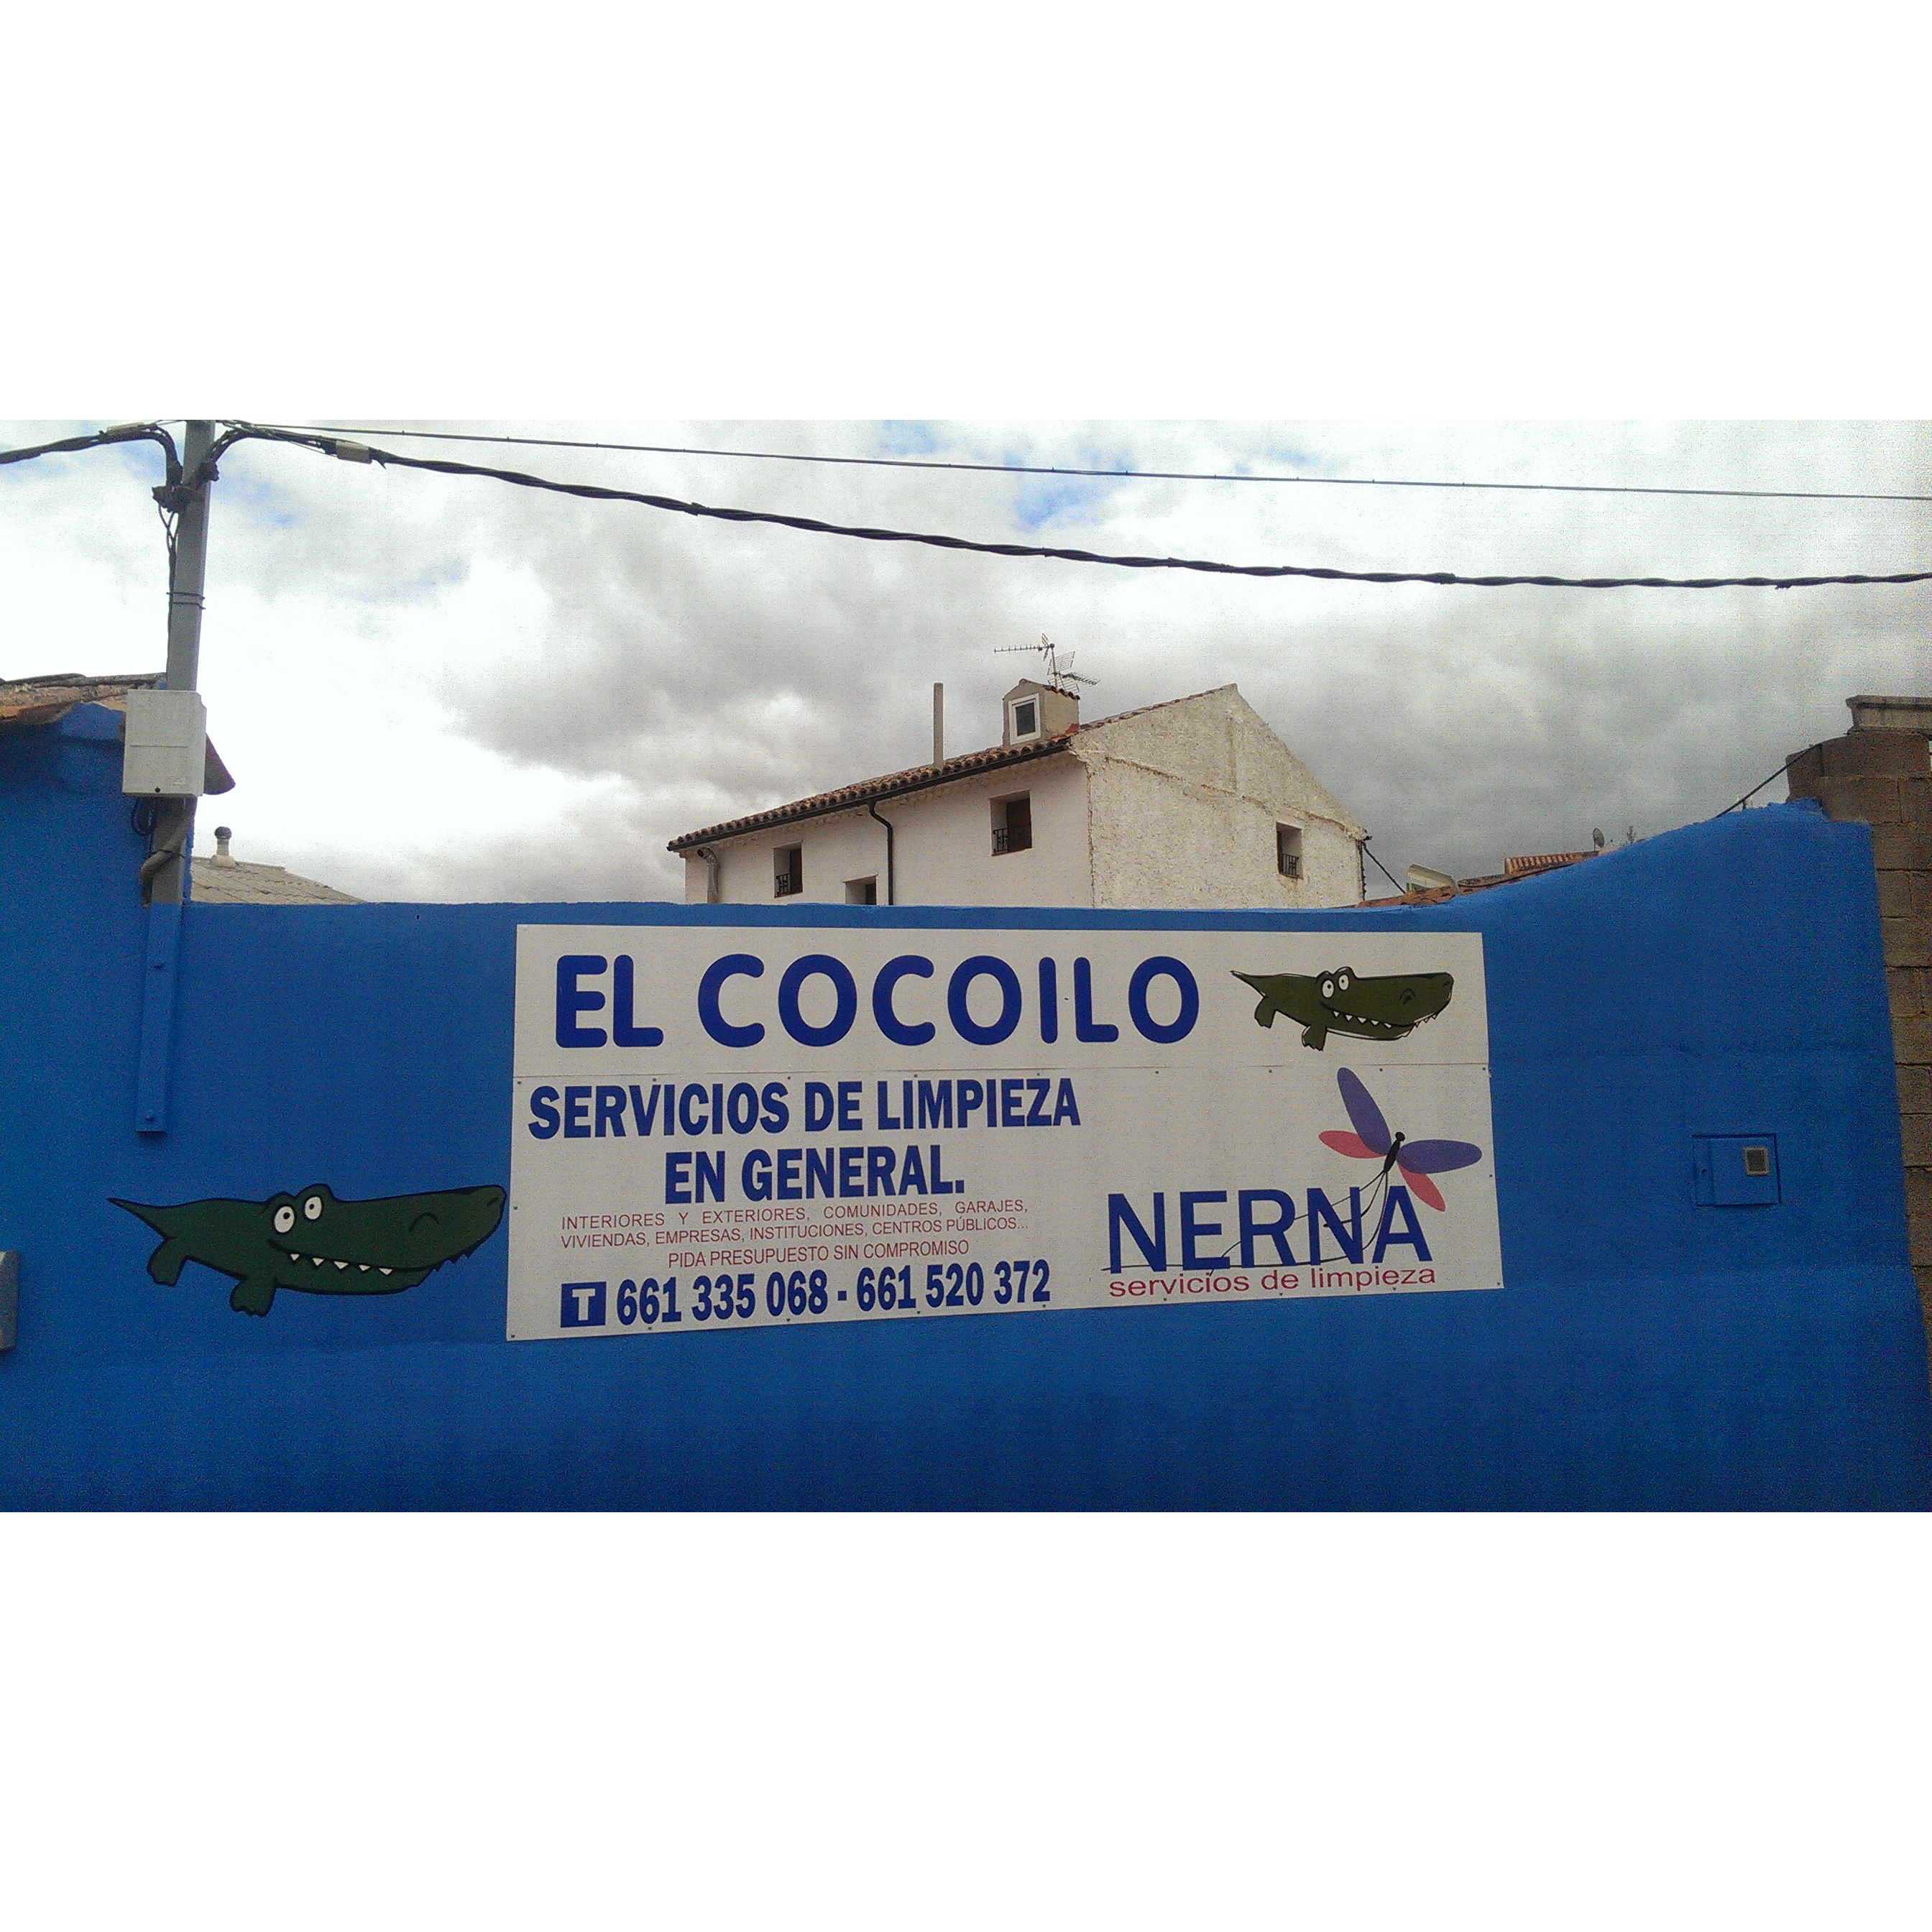 Limpiezas Nerna - El Cocoilo Calamocha